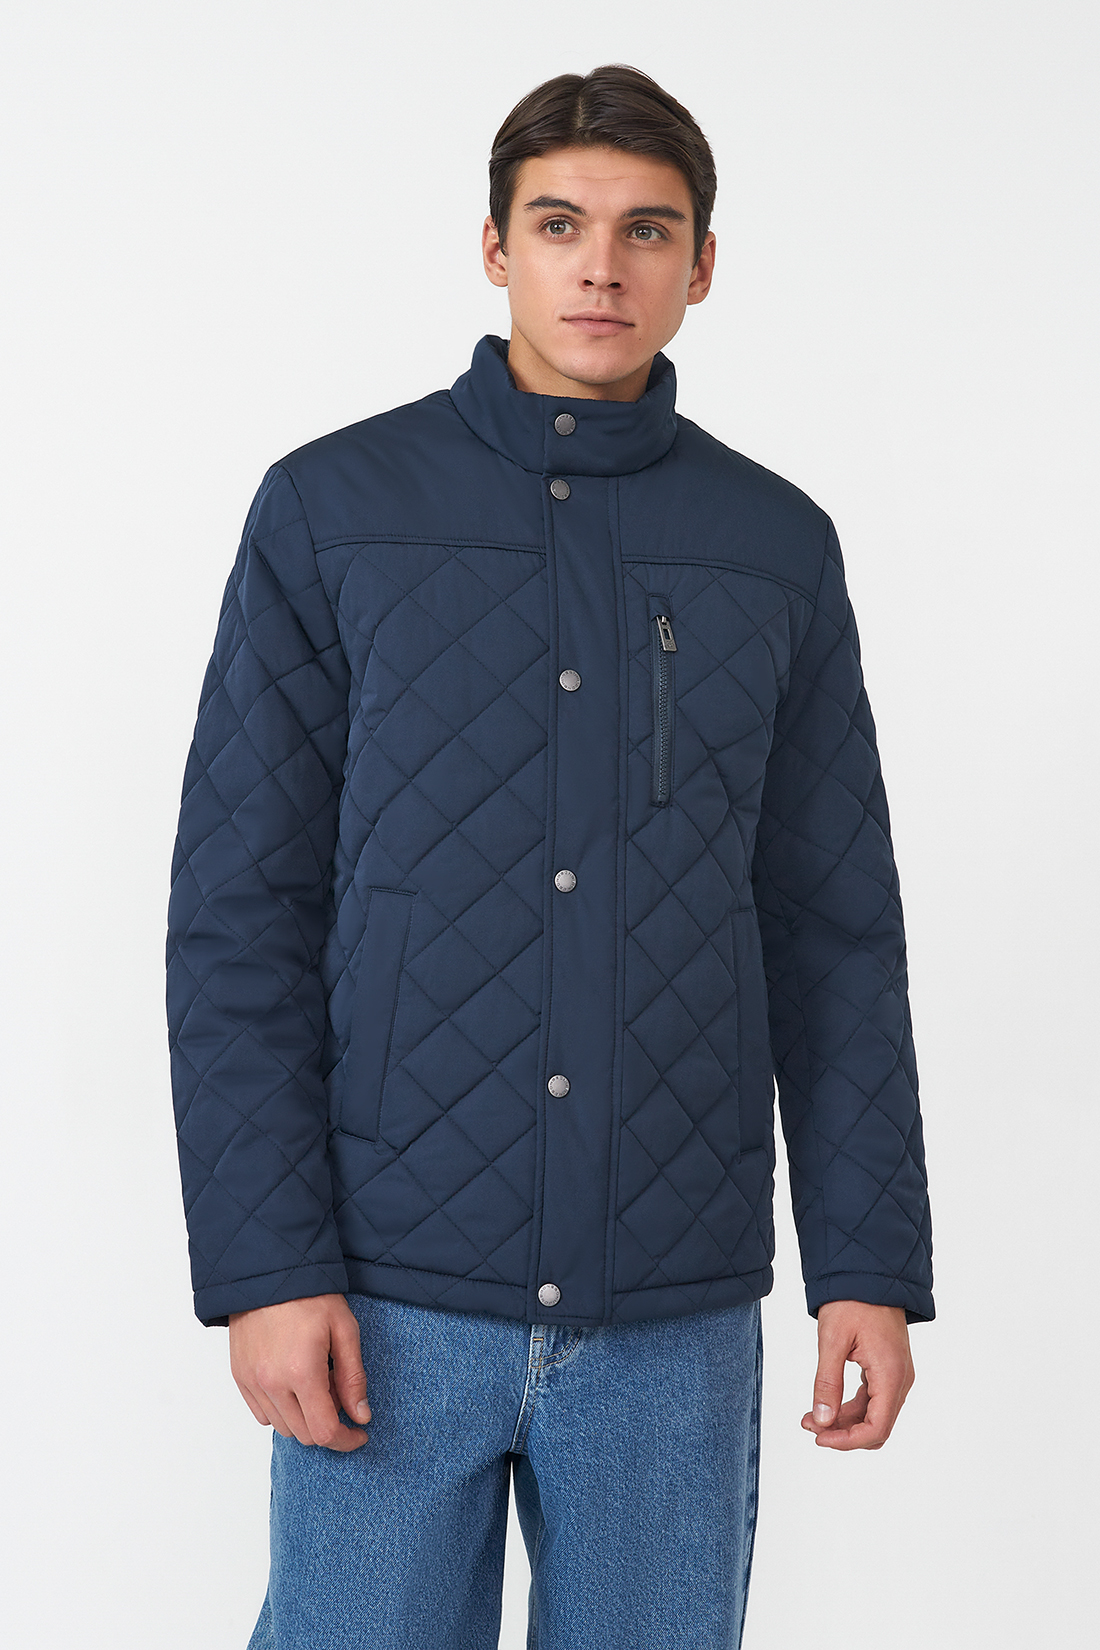 Зимняя куртка мужская Baon B5323506 синяя XXL